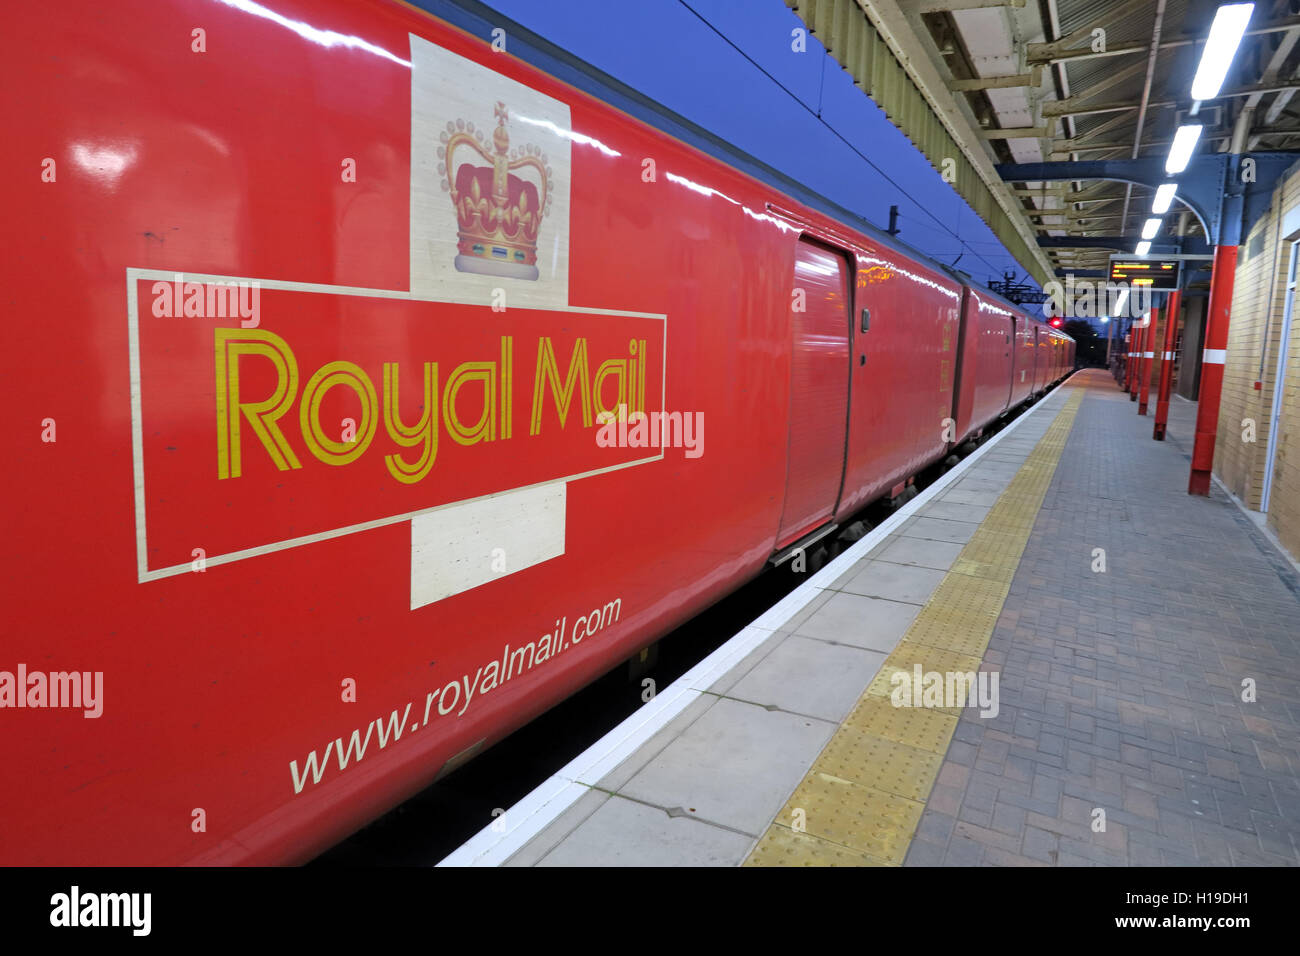 Royal mail ( RoyalMail.com) treno TPO, ufficio postale viaggiante in direzione nord dalla stazione di Warrington Bank Quay, Inghilterra, Regno Unito, WA1 1UP Foto Stock